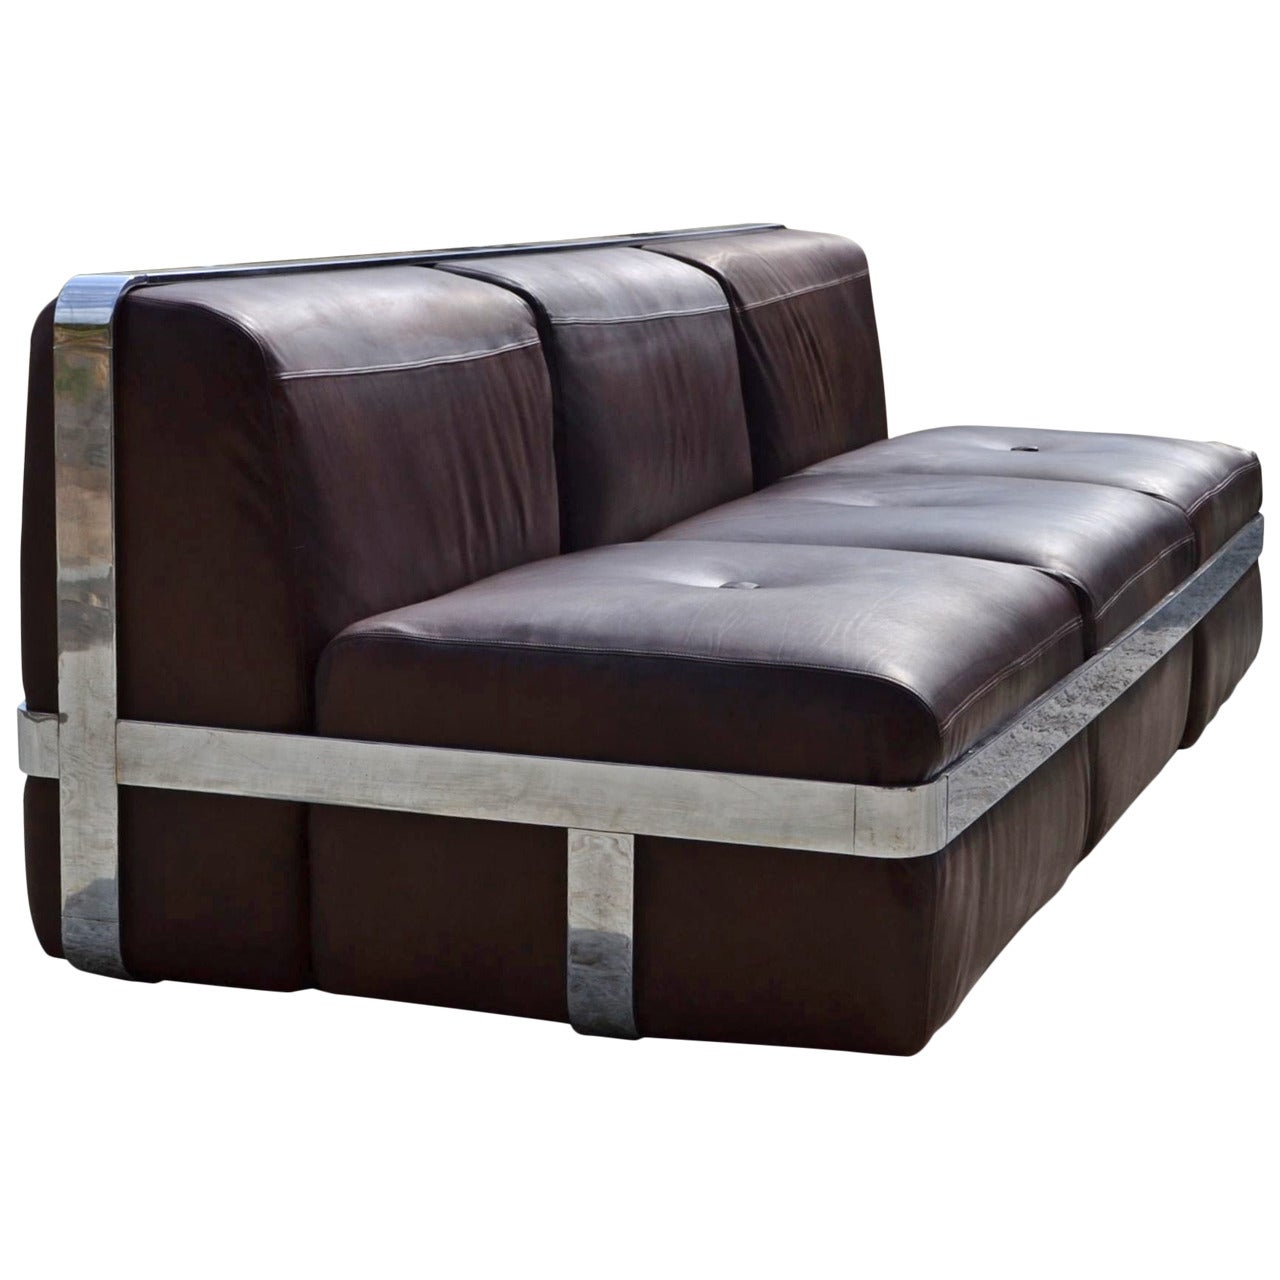 Maxform Leather Sofa by Maxform